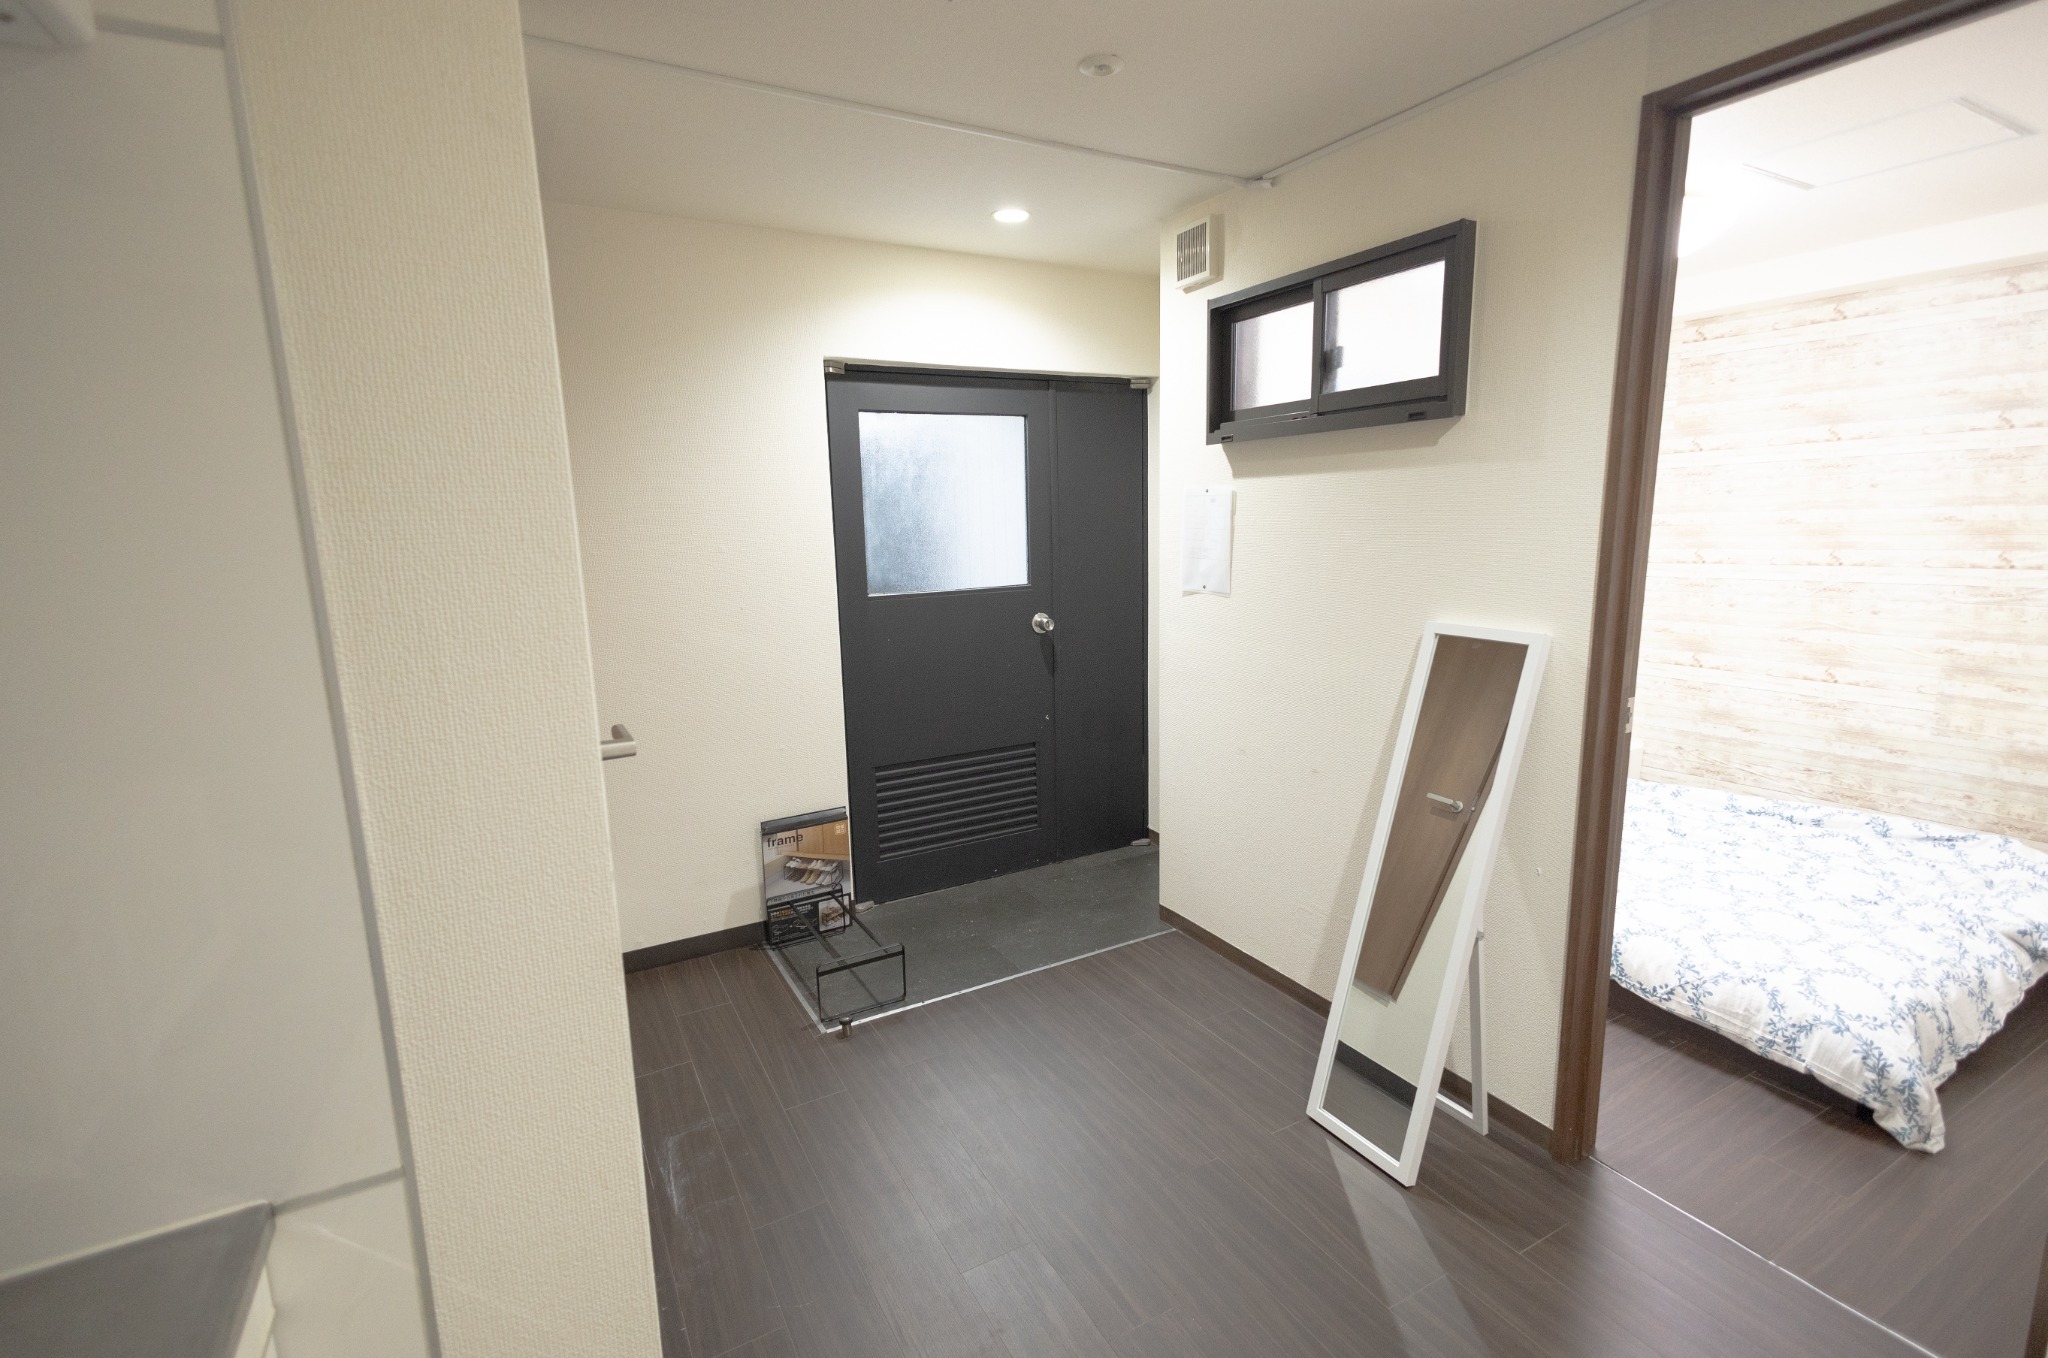 3ベッドルーム+リビング。4部屋全て個室。混まない2つのシャワールームとトイレ。東新宿駅2分8名。